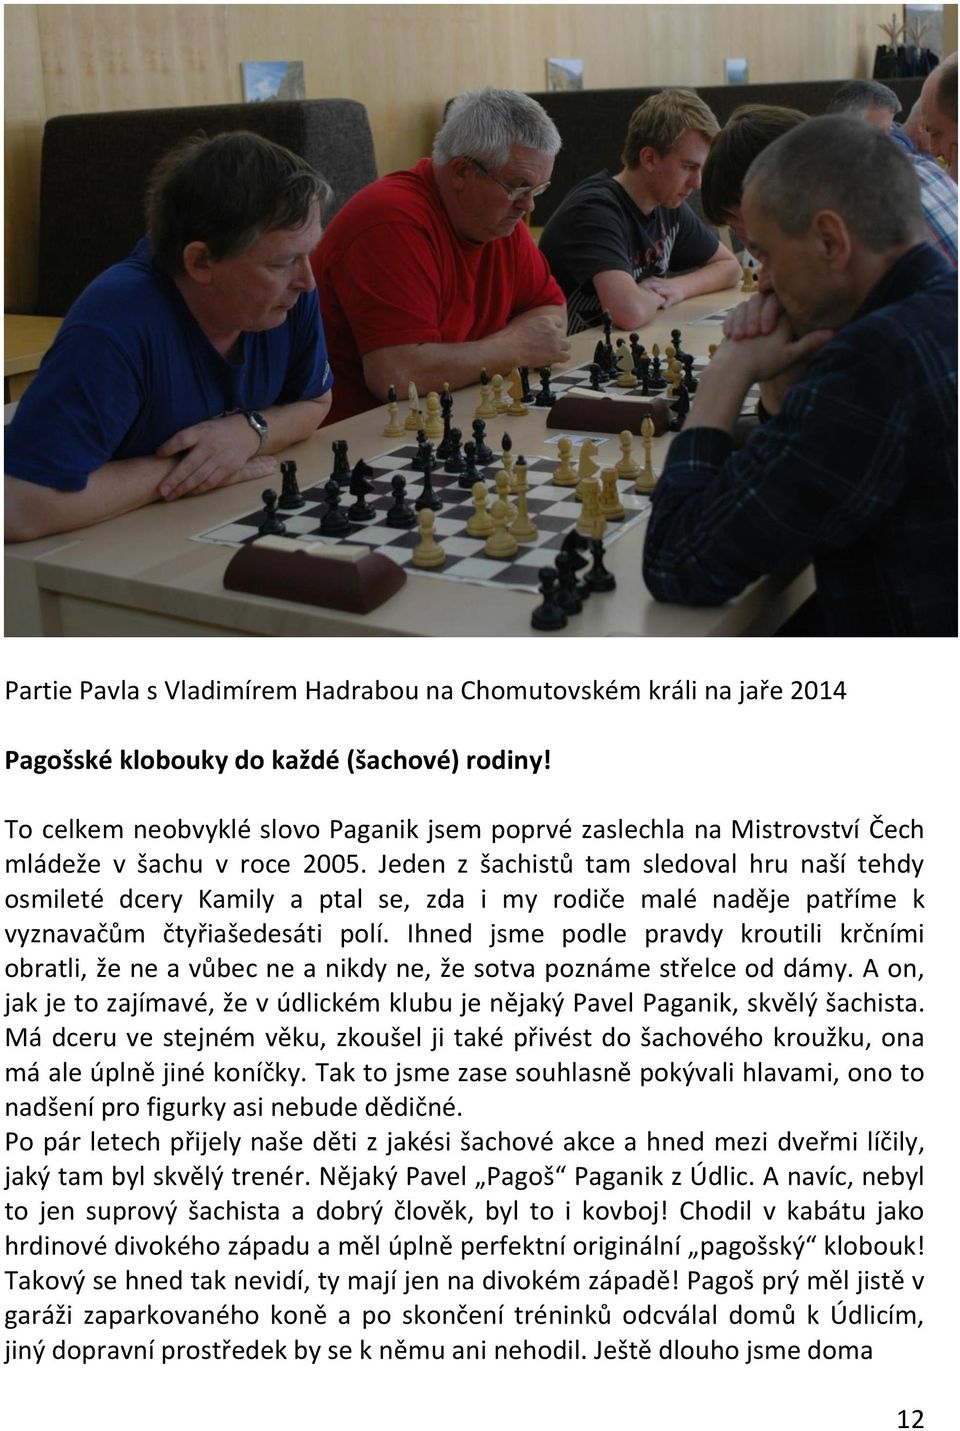 Pavel Paganik ( ) - PDF Free Download